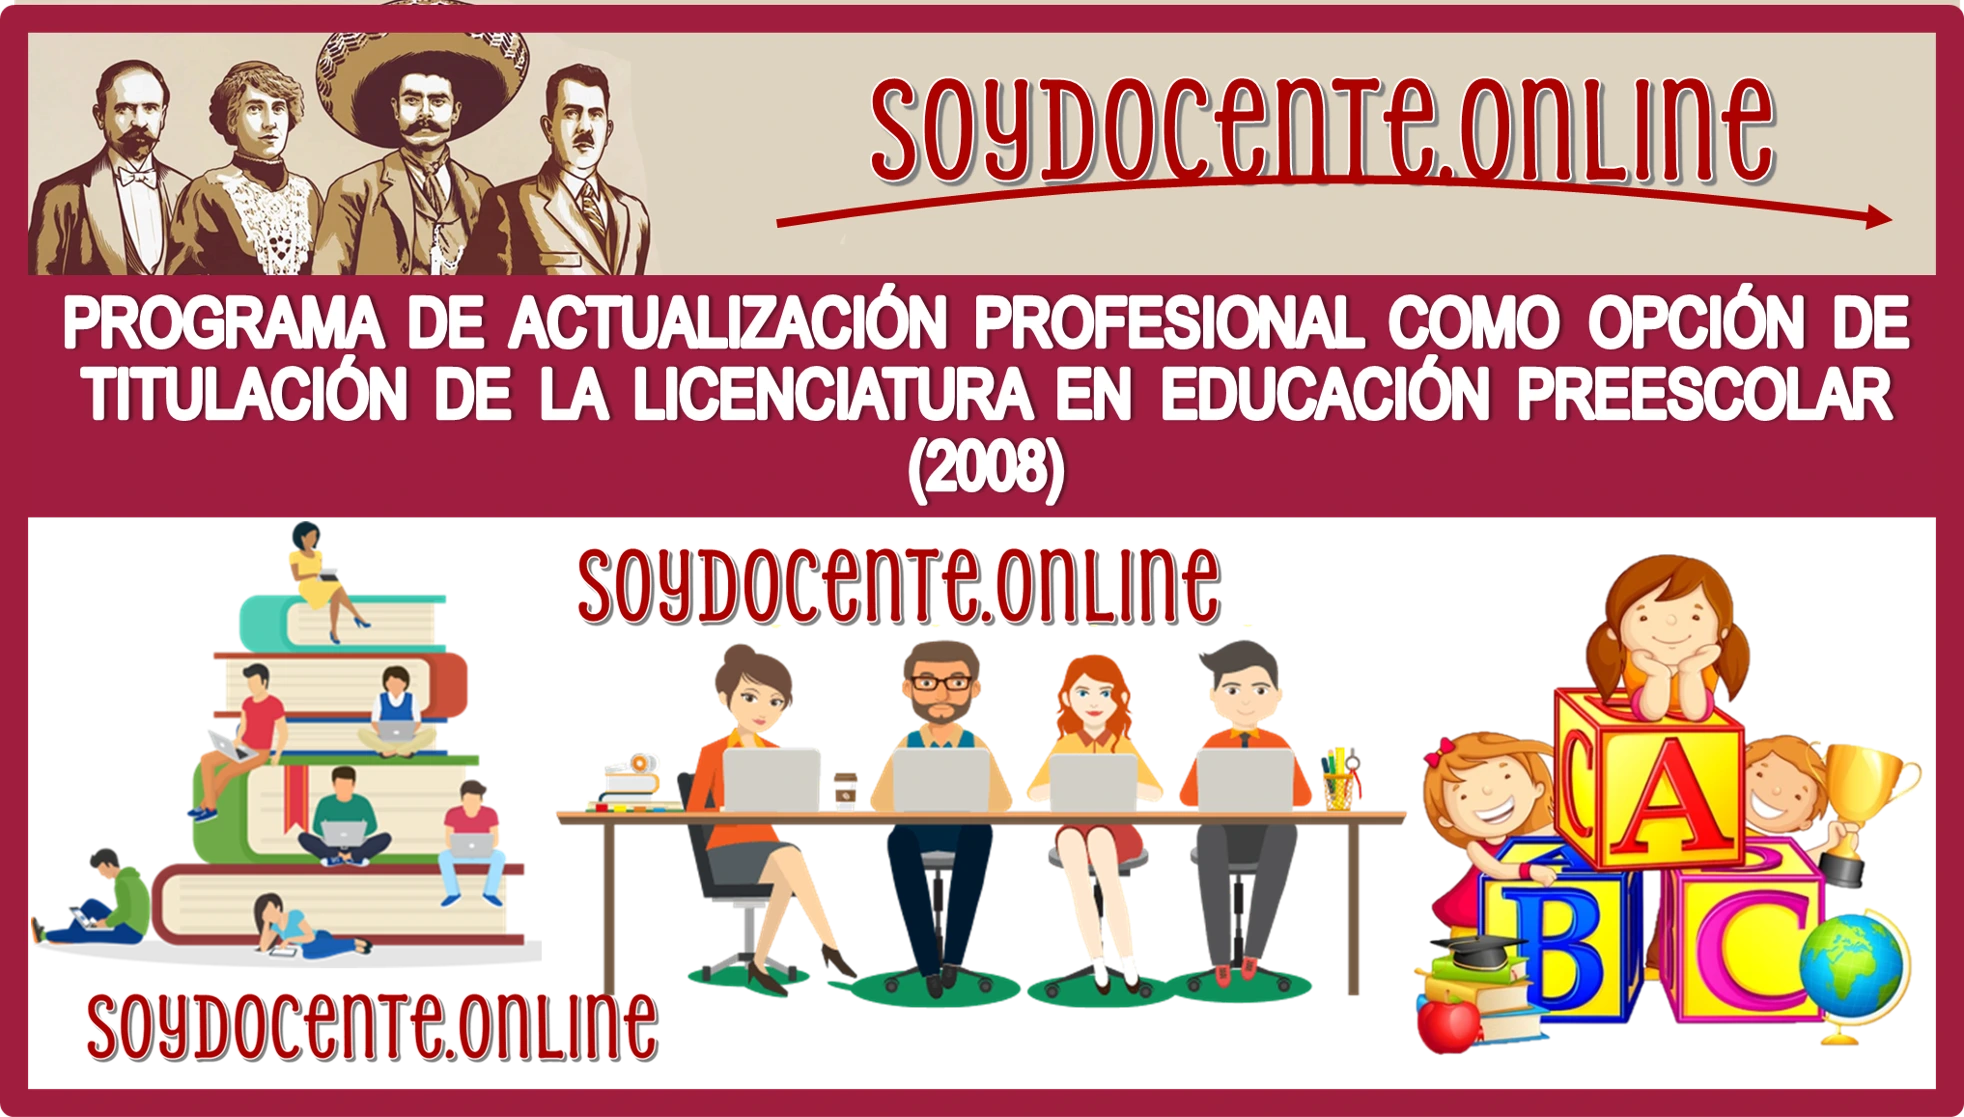   📢👩‍🏫👨‍🏫💥Conoce el Programa de Actualización Profesional como Opción de Titulación de la Licenciatura en Educación Preescolar (2008) 📢👩‍🏫👨‍🏫💥